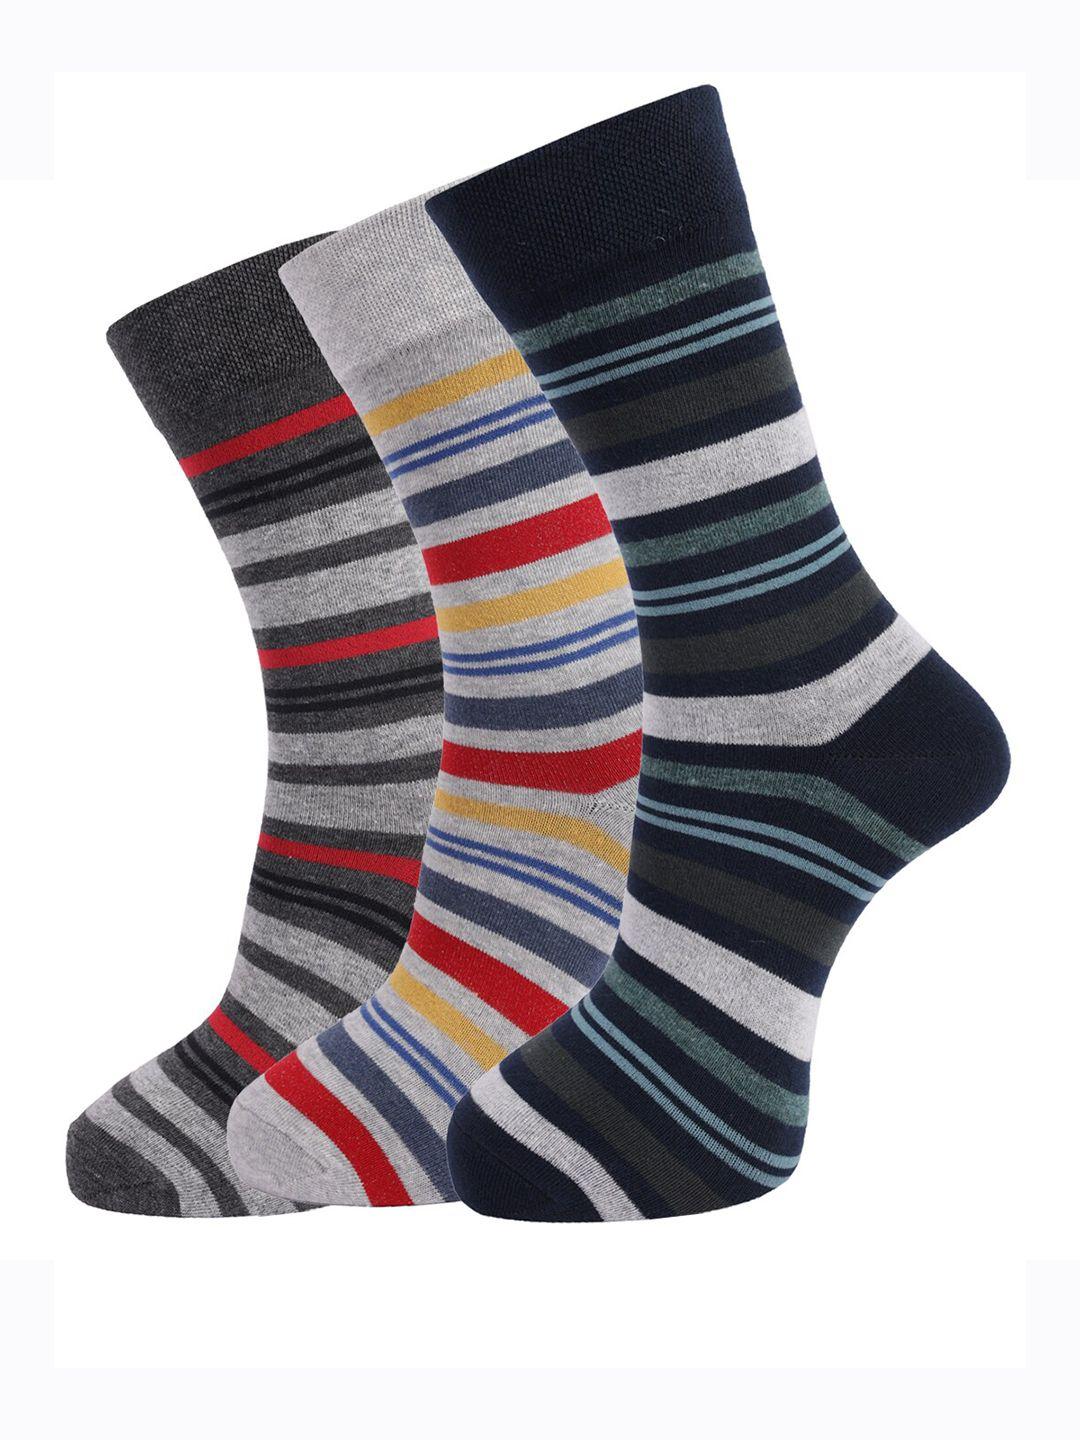 dollar socks men pack of 3 assorted above ankle-length cotton socks